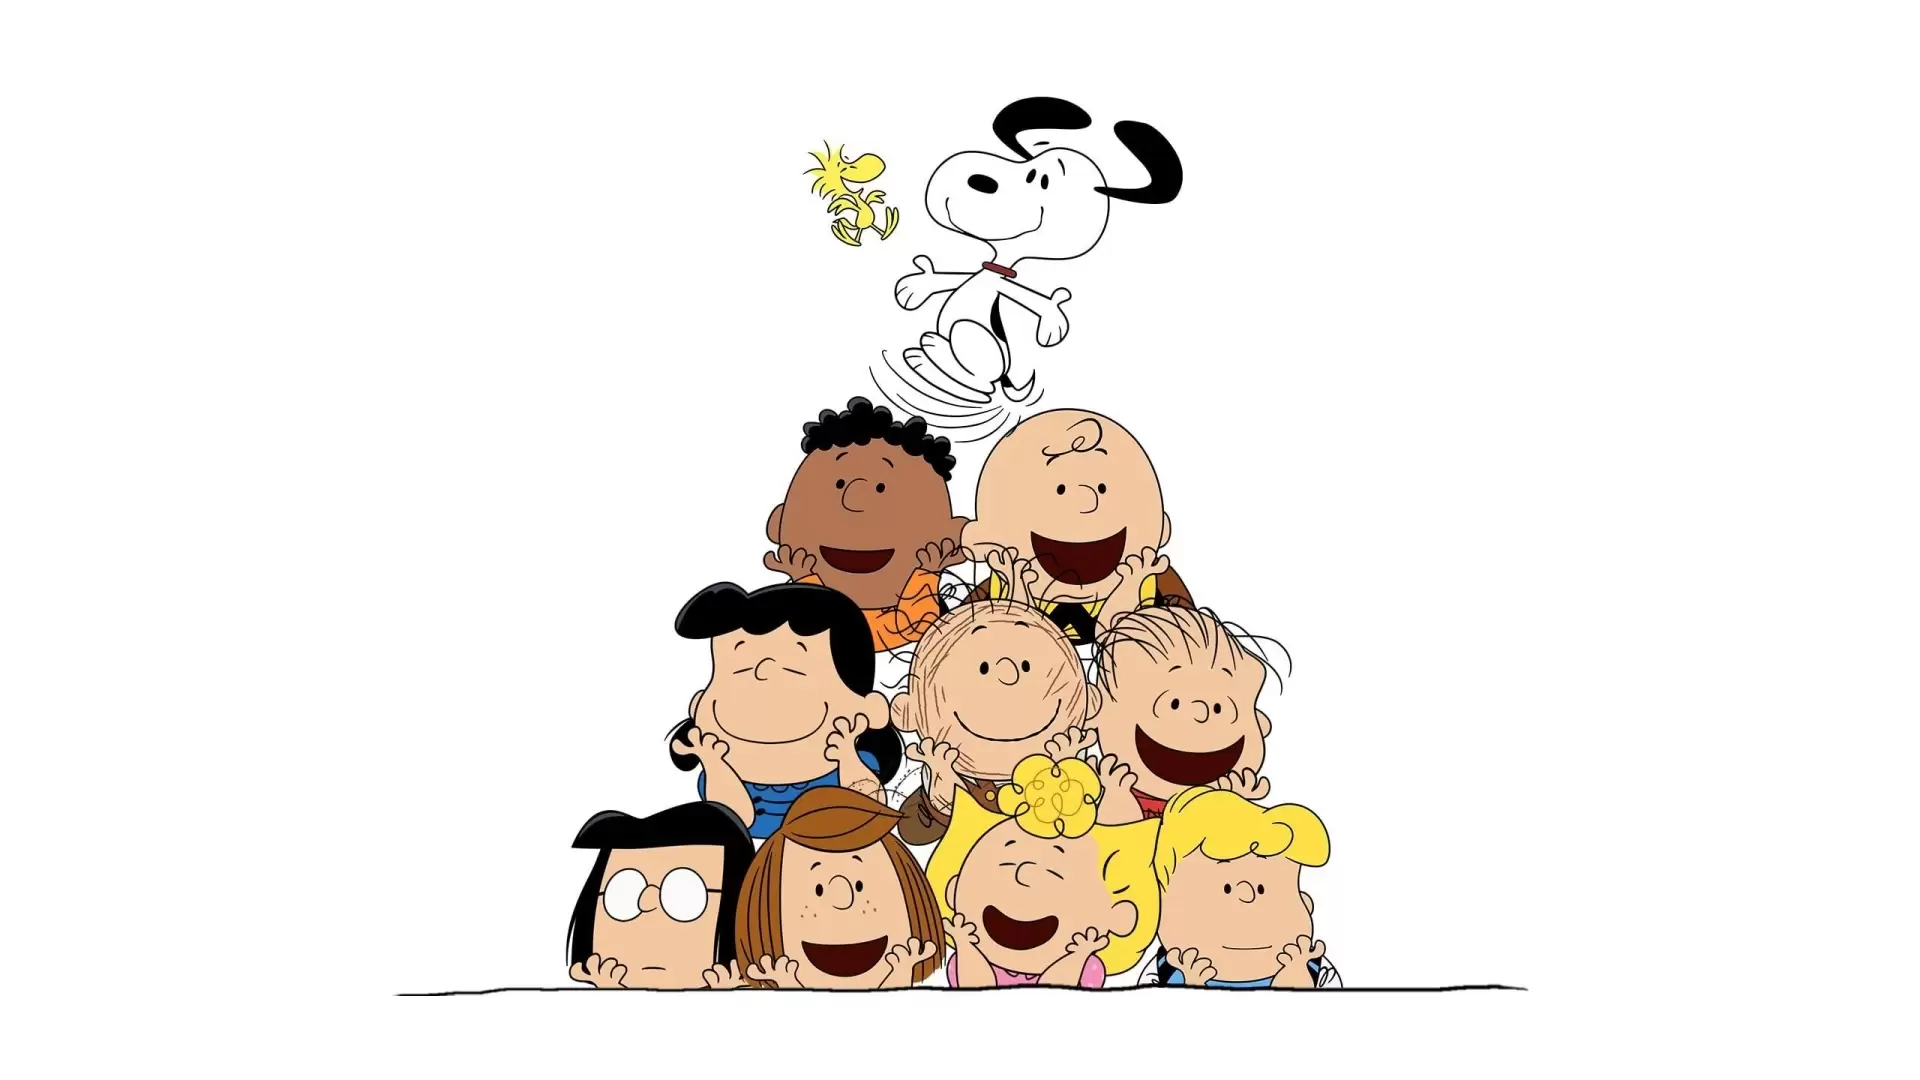 دانلود انیمیشن The Snoopy Show 2021 (نمایش اسنوپی) با تماشای آنلاین